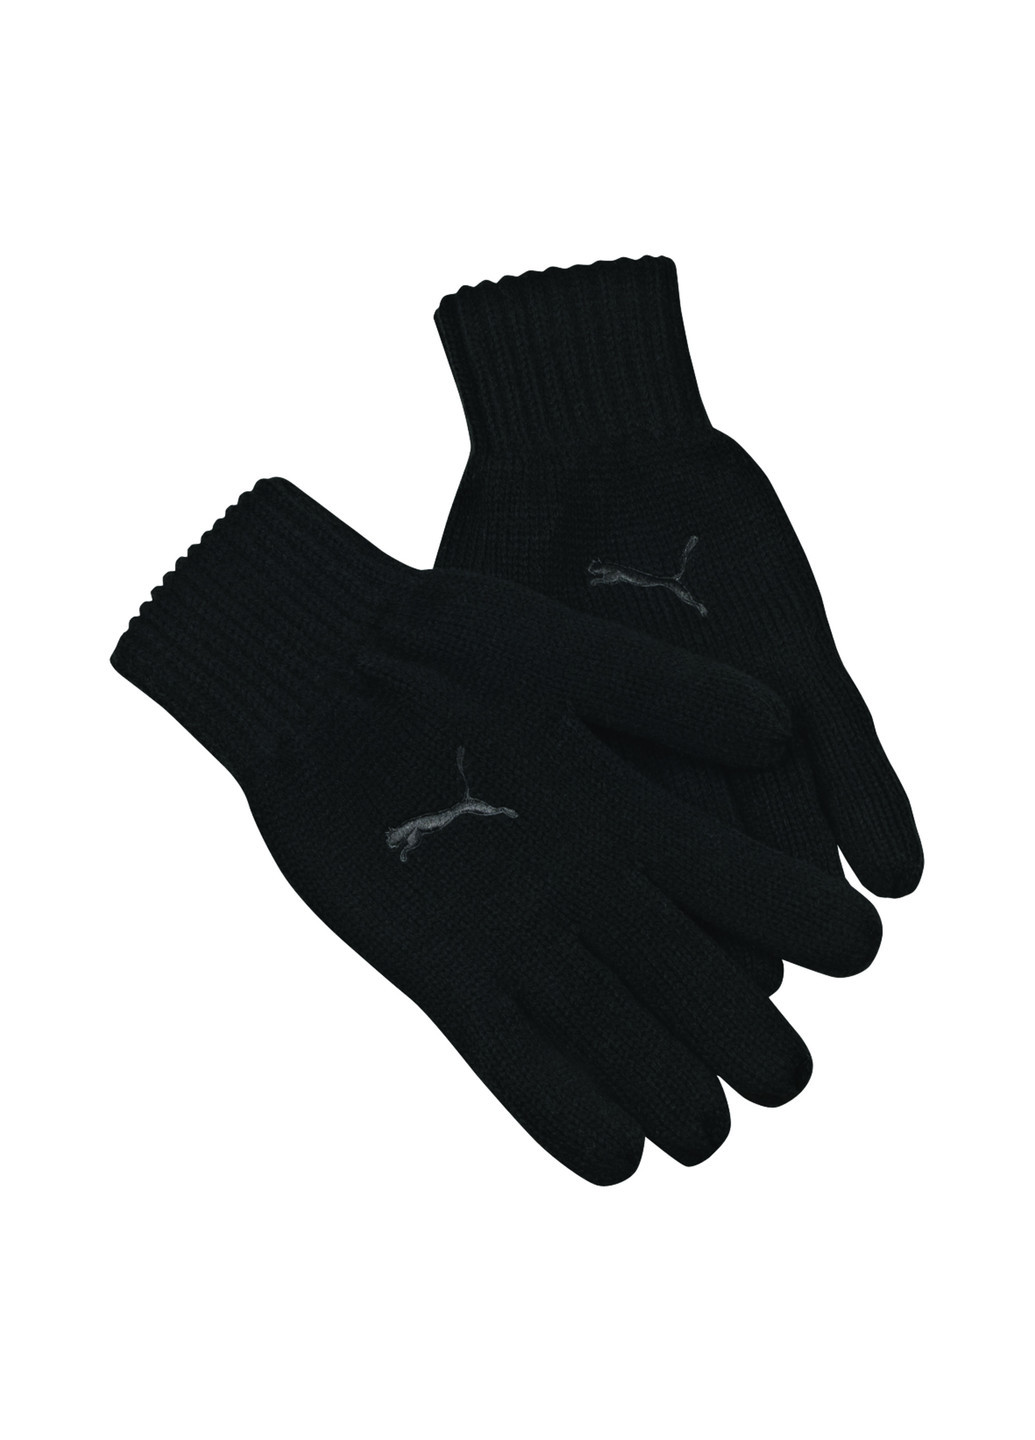 В'язані рукавички Puma Fundamentals Knit Gloves однотонні чорні спортивні